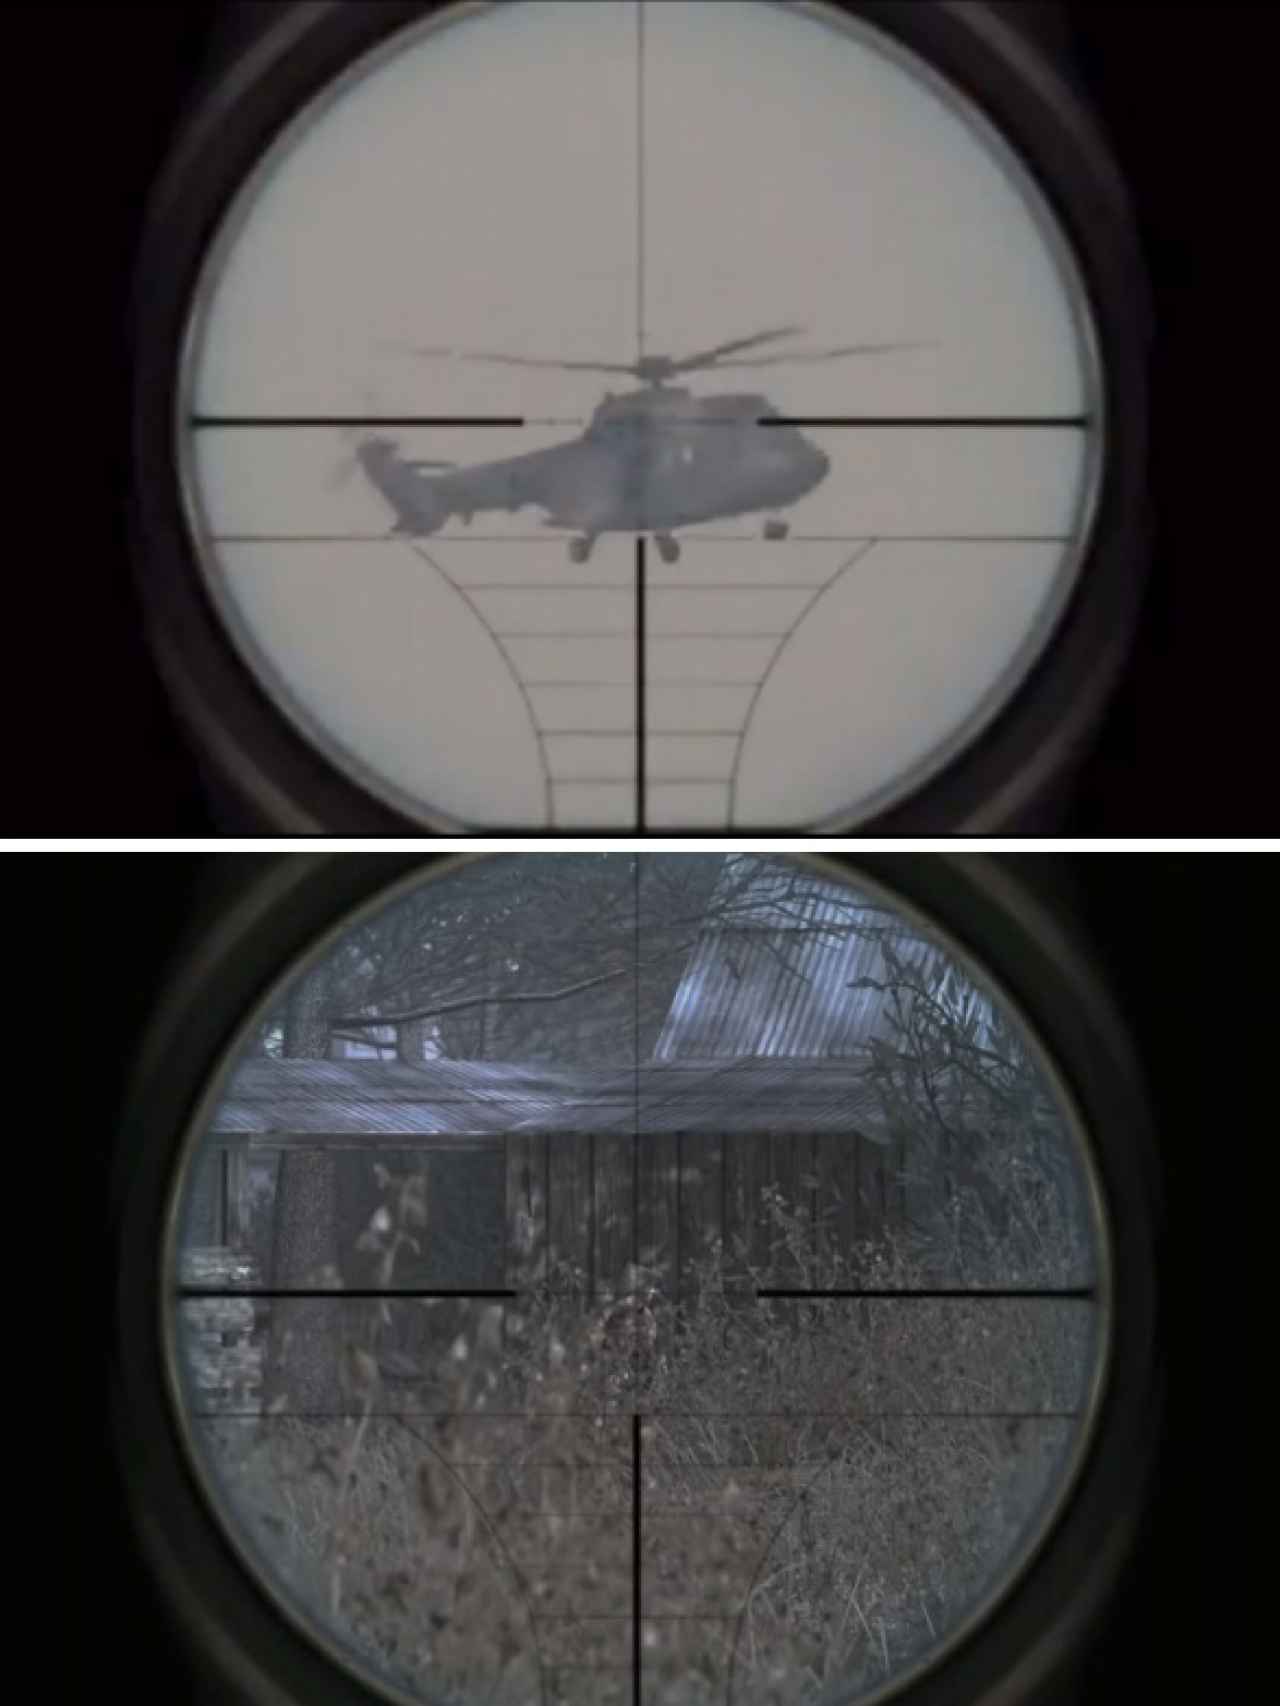 Arriba, la imagen del vídeo propagandístico; abajo, la imagen del videojuego 'Call of Duty'. Se puede observar que la composición de la mira telescópica es idéntica en ambos casos.